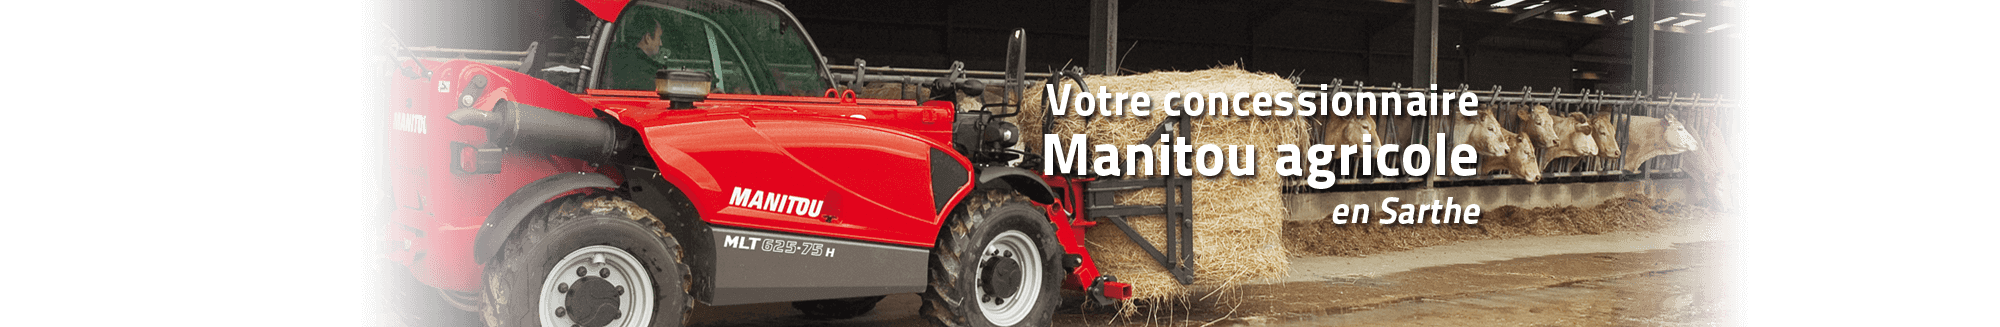 Votre concessionnaire Manitou agricole en Sarthe